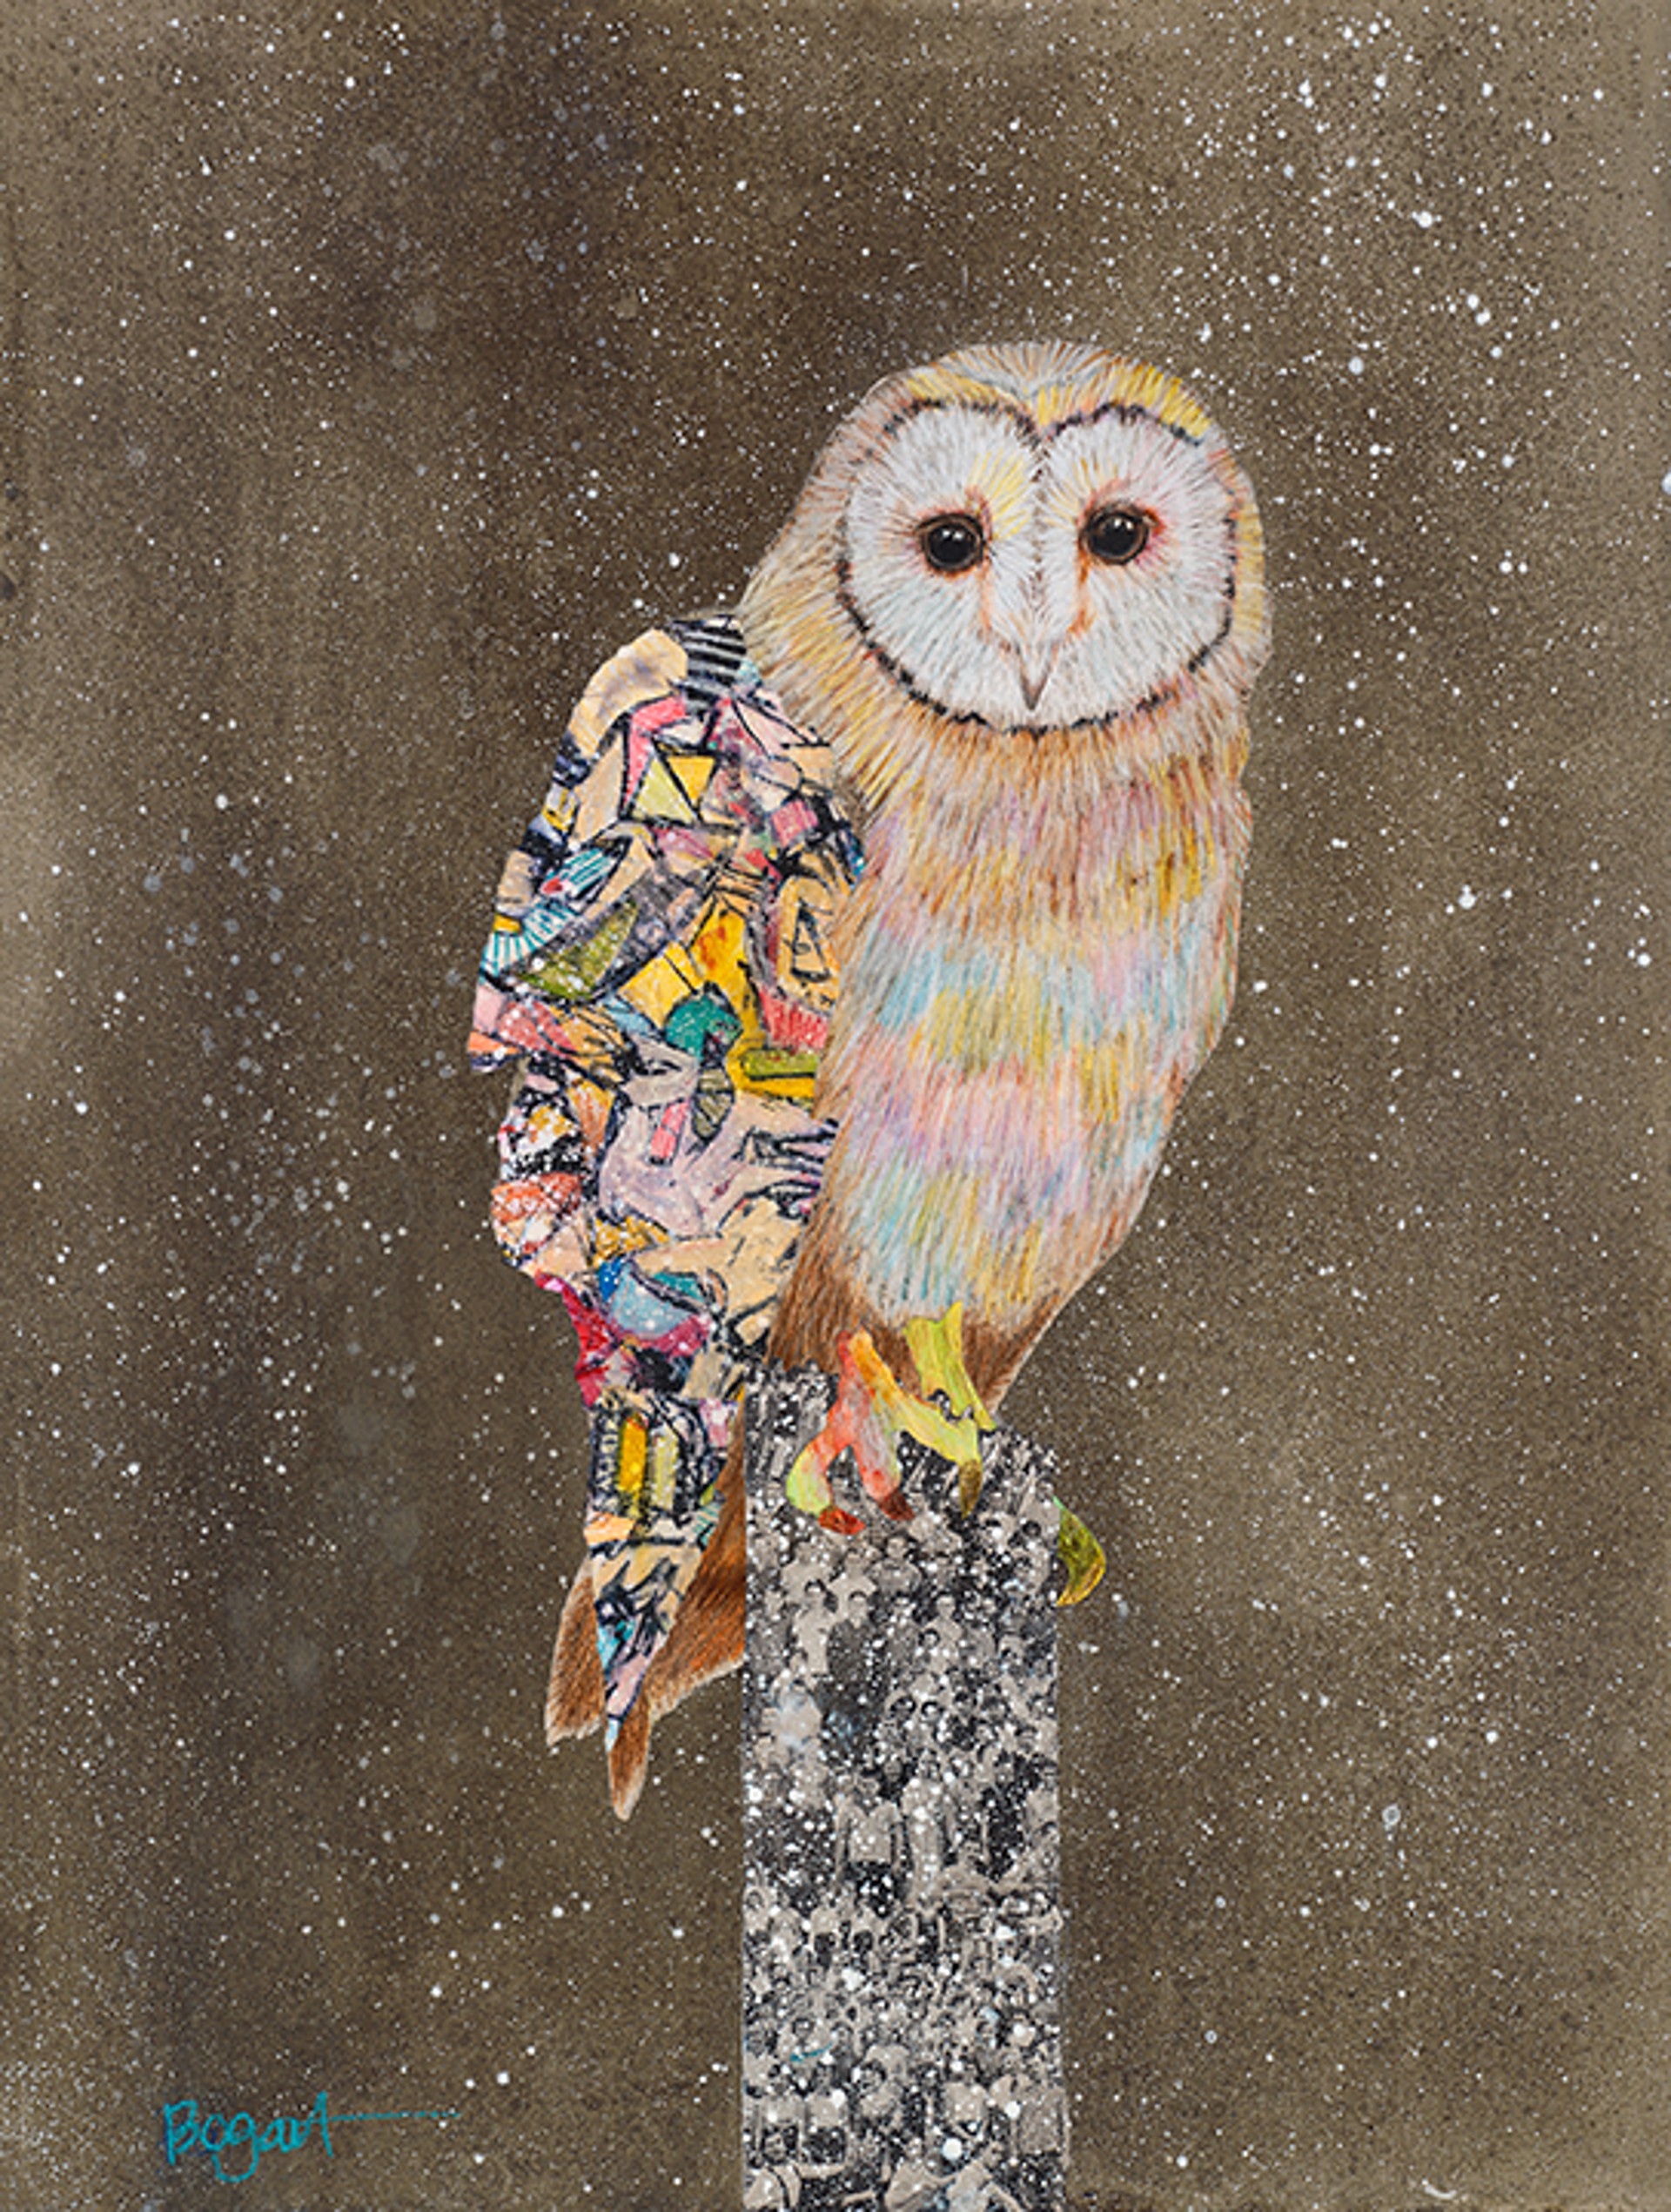 Barn Owl on a Snowy Night 3 by Brenda Bogart - Prints